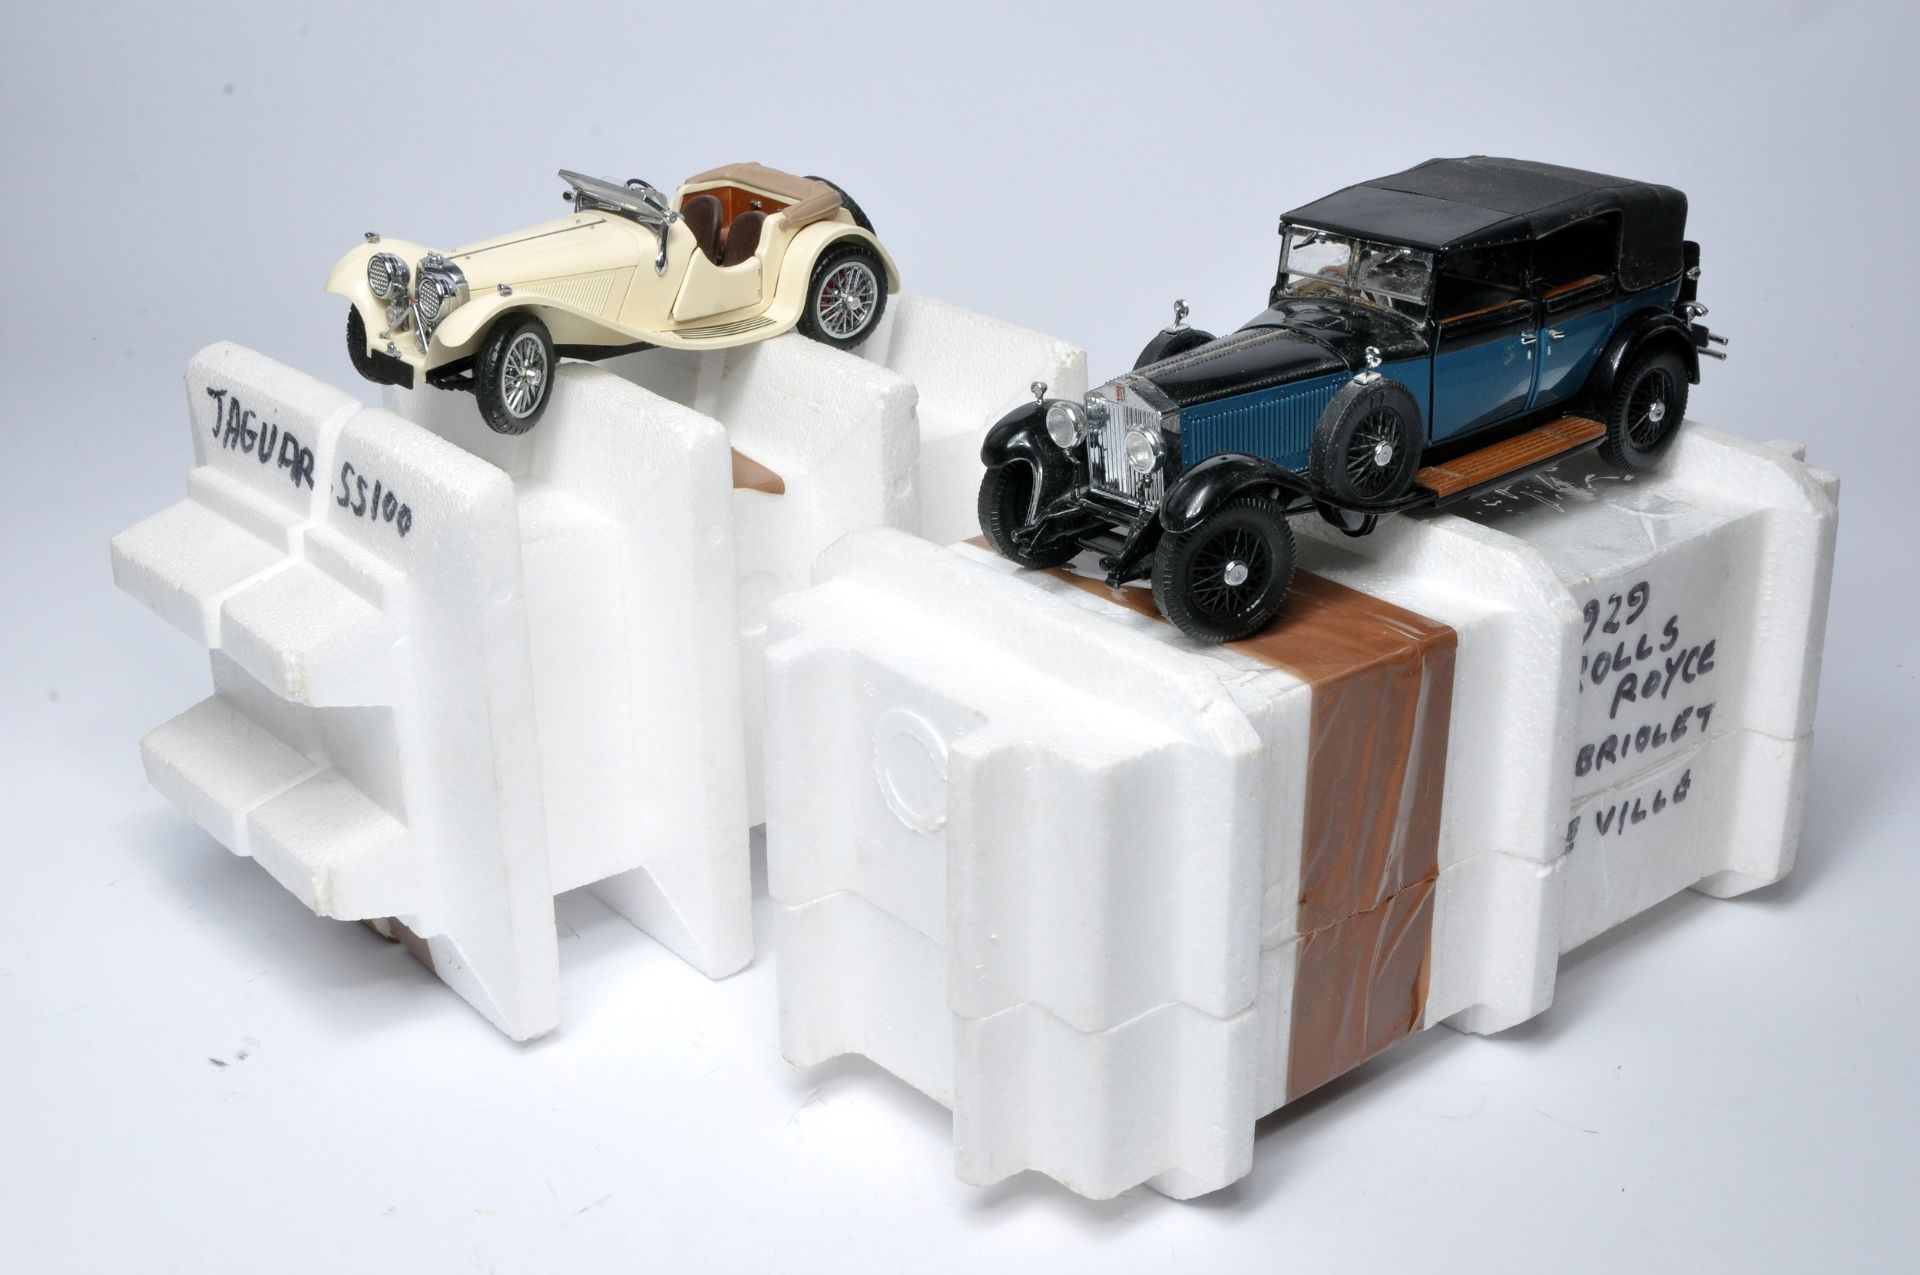 Franklin Mint 1/24 diecast model issues comprising 1929 Rolls Royce Cabriolet De Ville plus Jaguar